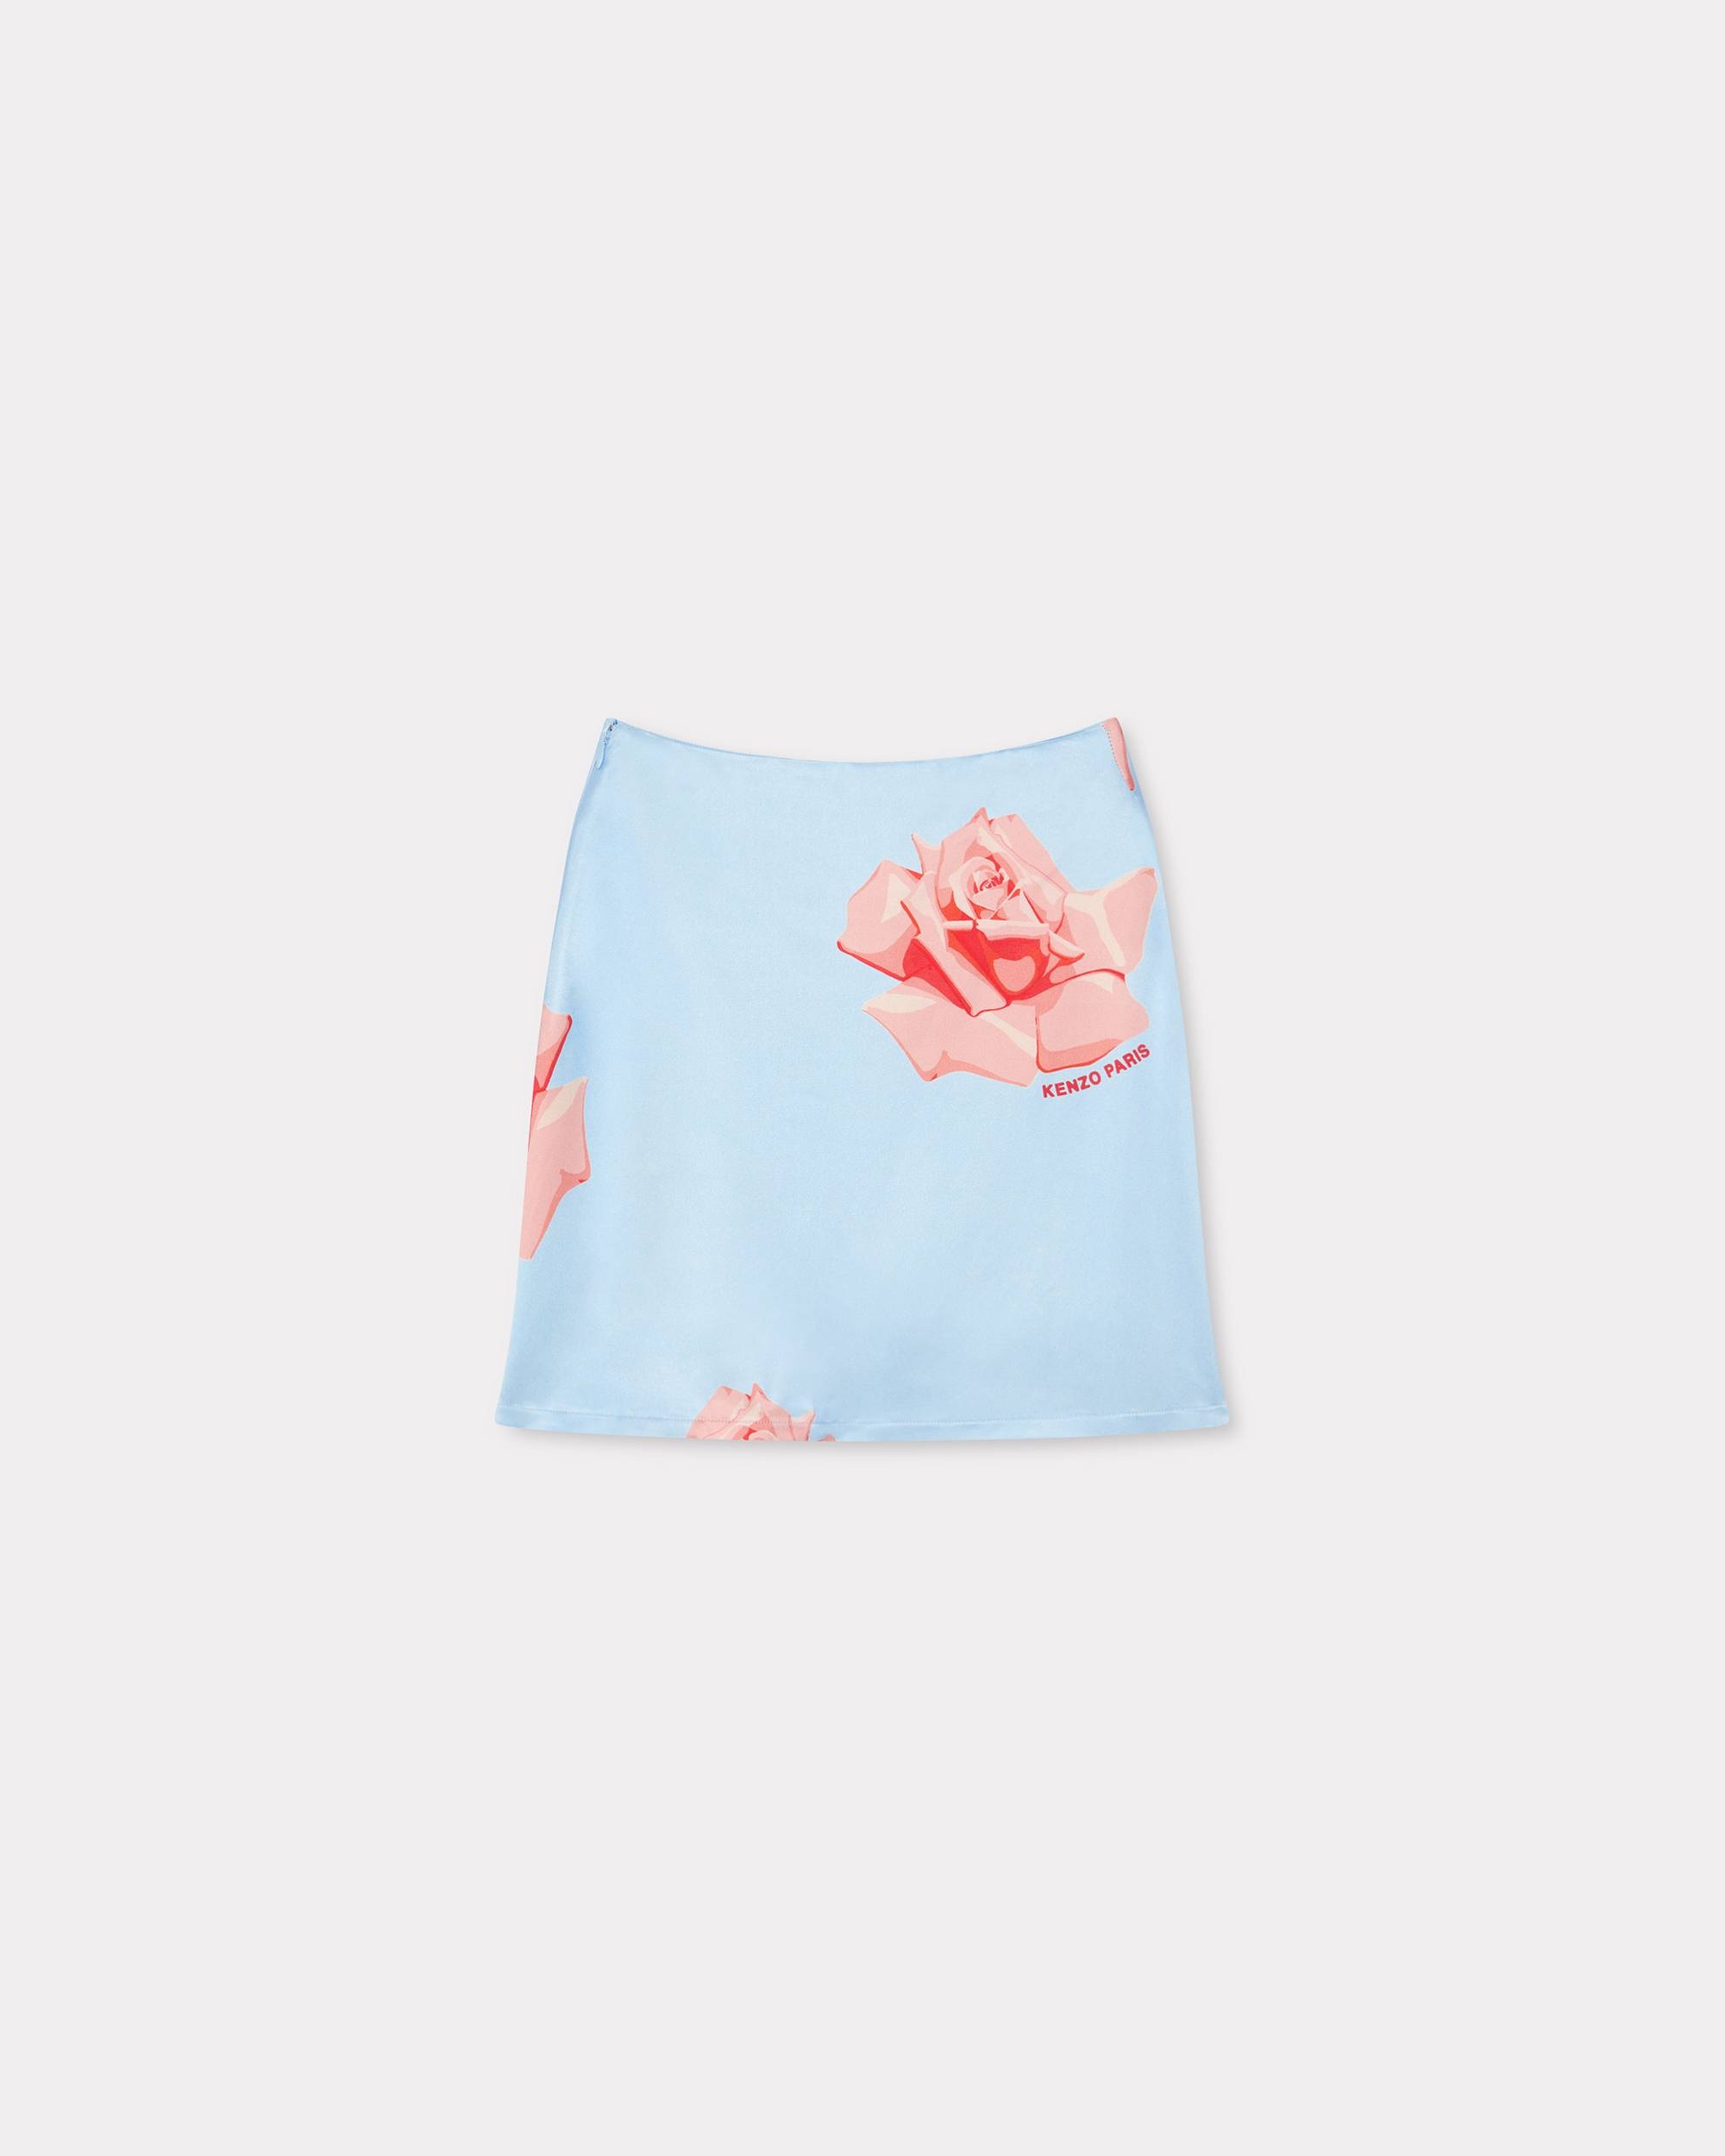 'KENZO Rose' short skirt - 2